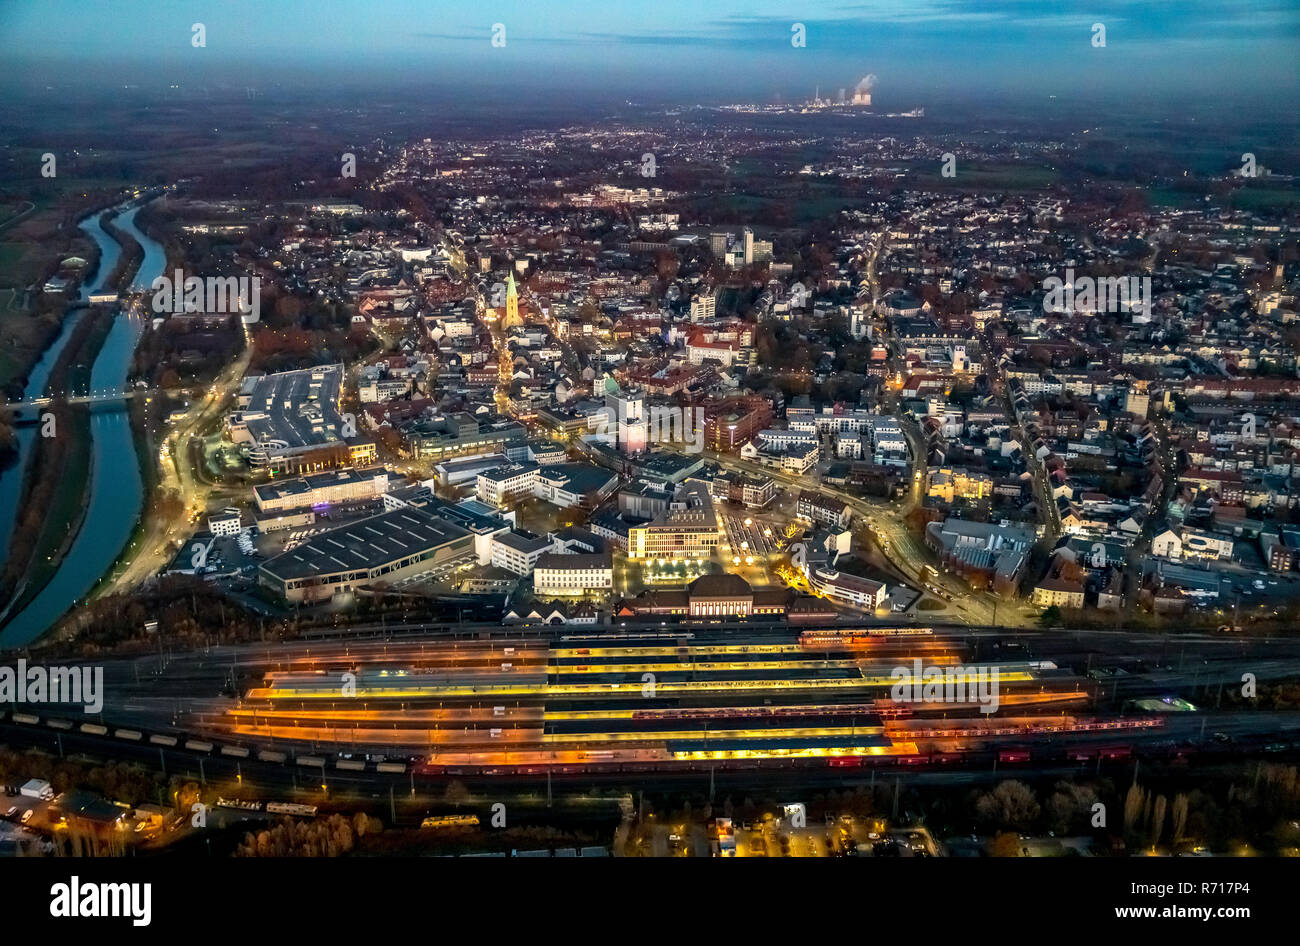 Luftaufnahme, Stadtzentrum, Dämmerung mit Hauptbahnhof, Hamm, Ruhrgebiet, Nordrhein-Westfalen, Deutschland Stockfoto